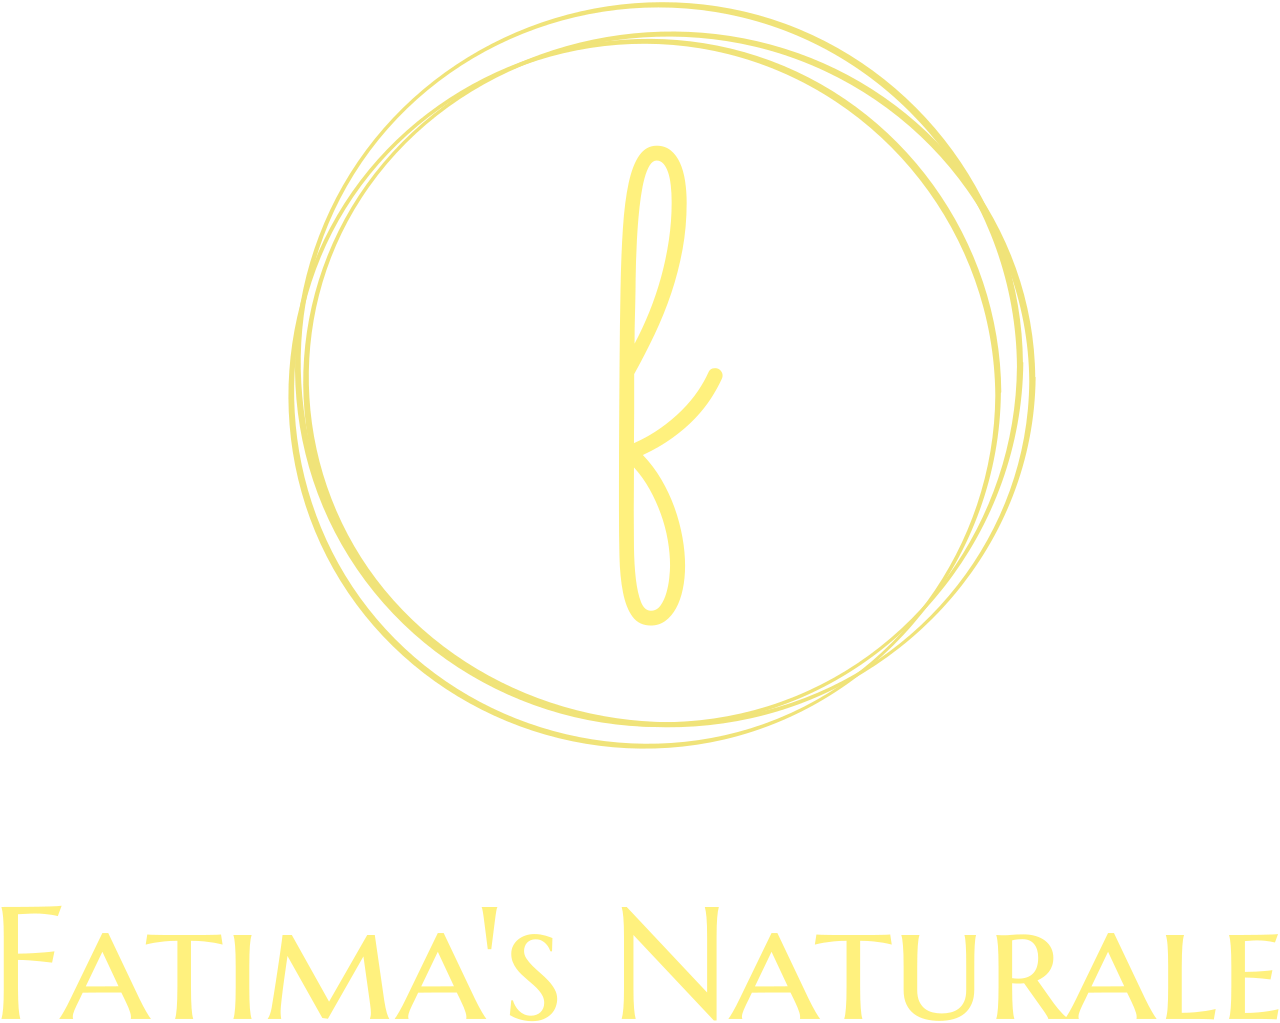 Fatima's Naturale 's web page